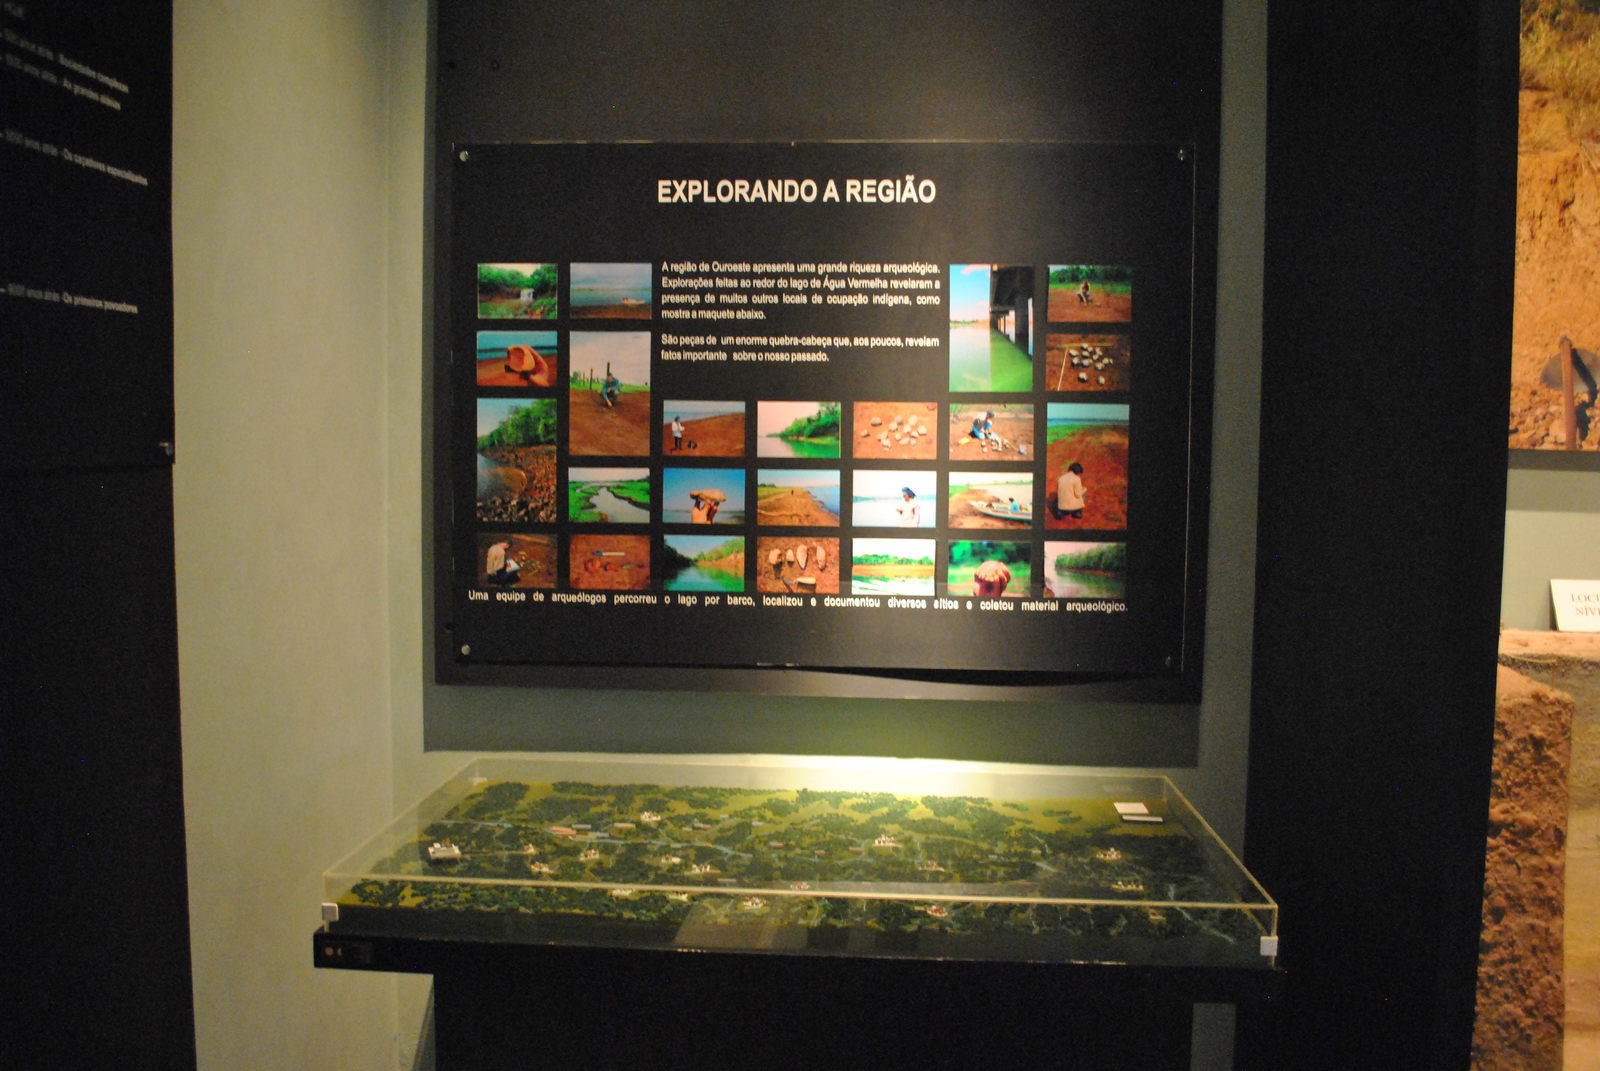 Foto com quadro que ilustra um pouco sobre a região, e uma maquete da região da cidade de Ouroeste, onde fica localizado o museu Água Vermelha